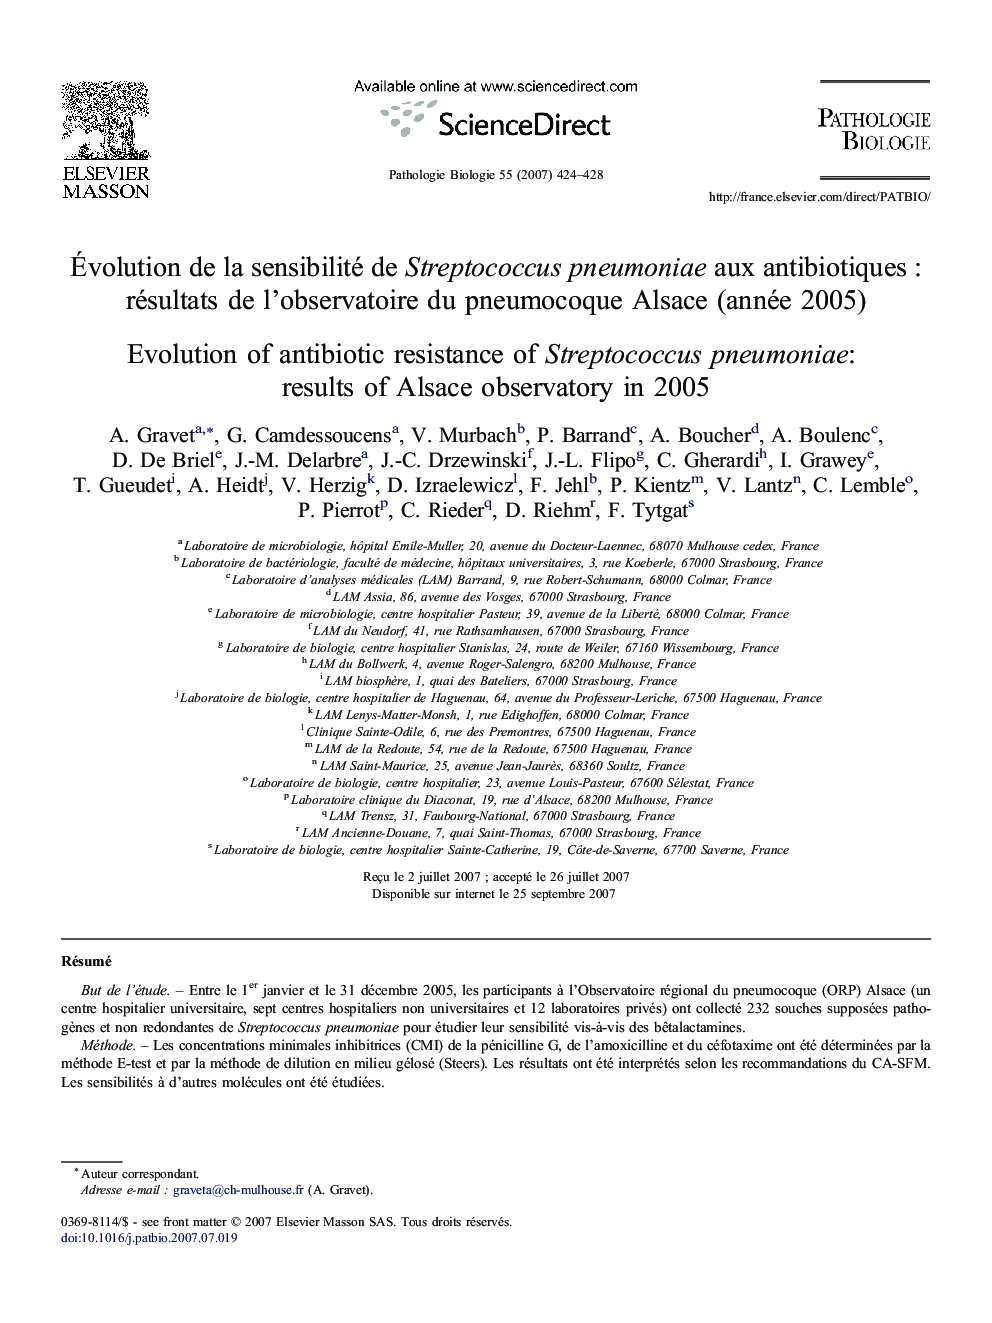 Évolution de la sensibilité de Streptococcus pneumoniae aux antibiotiques : résultats de l'observatoire du pneumocoque Alsace (année 2005)